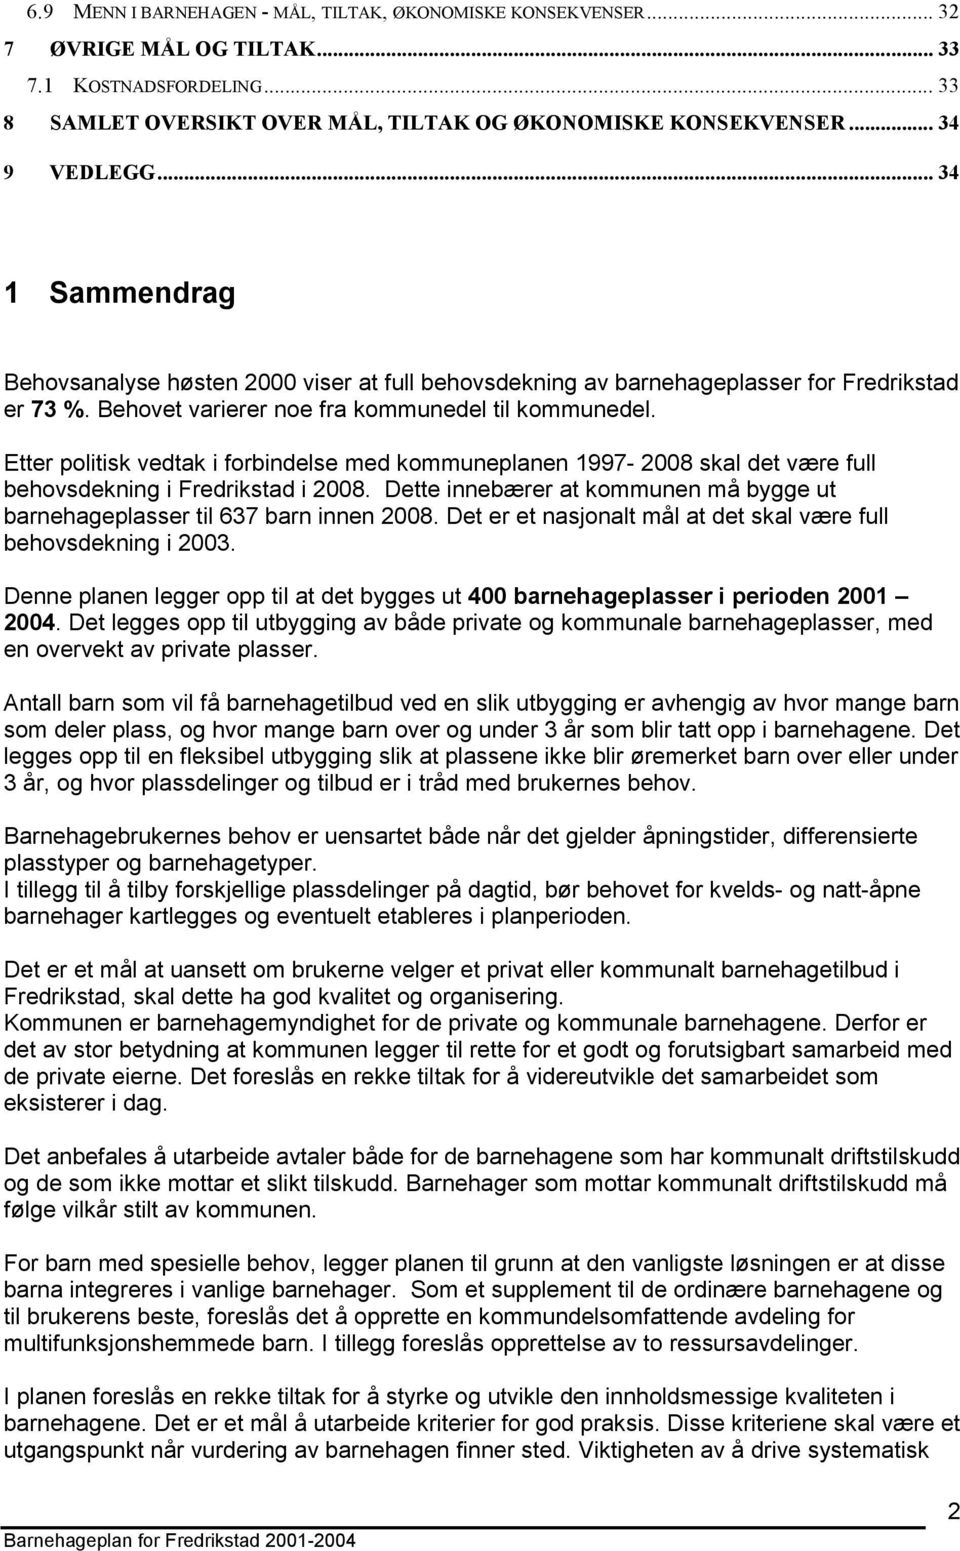 Etter politisk vedtak i forbindelse med kommuneplanen 1997-2008 skal det være full behovsdekning i Fredrikstad i 2008. Dette innebærer at kommunen må bygge ut barnehageplasser til 637 barn innen 2008.